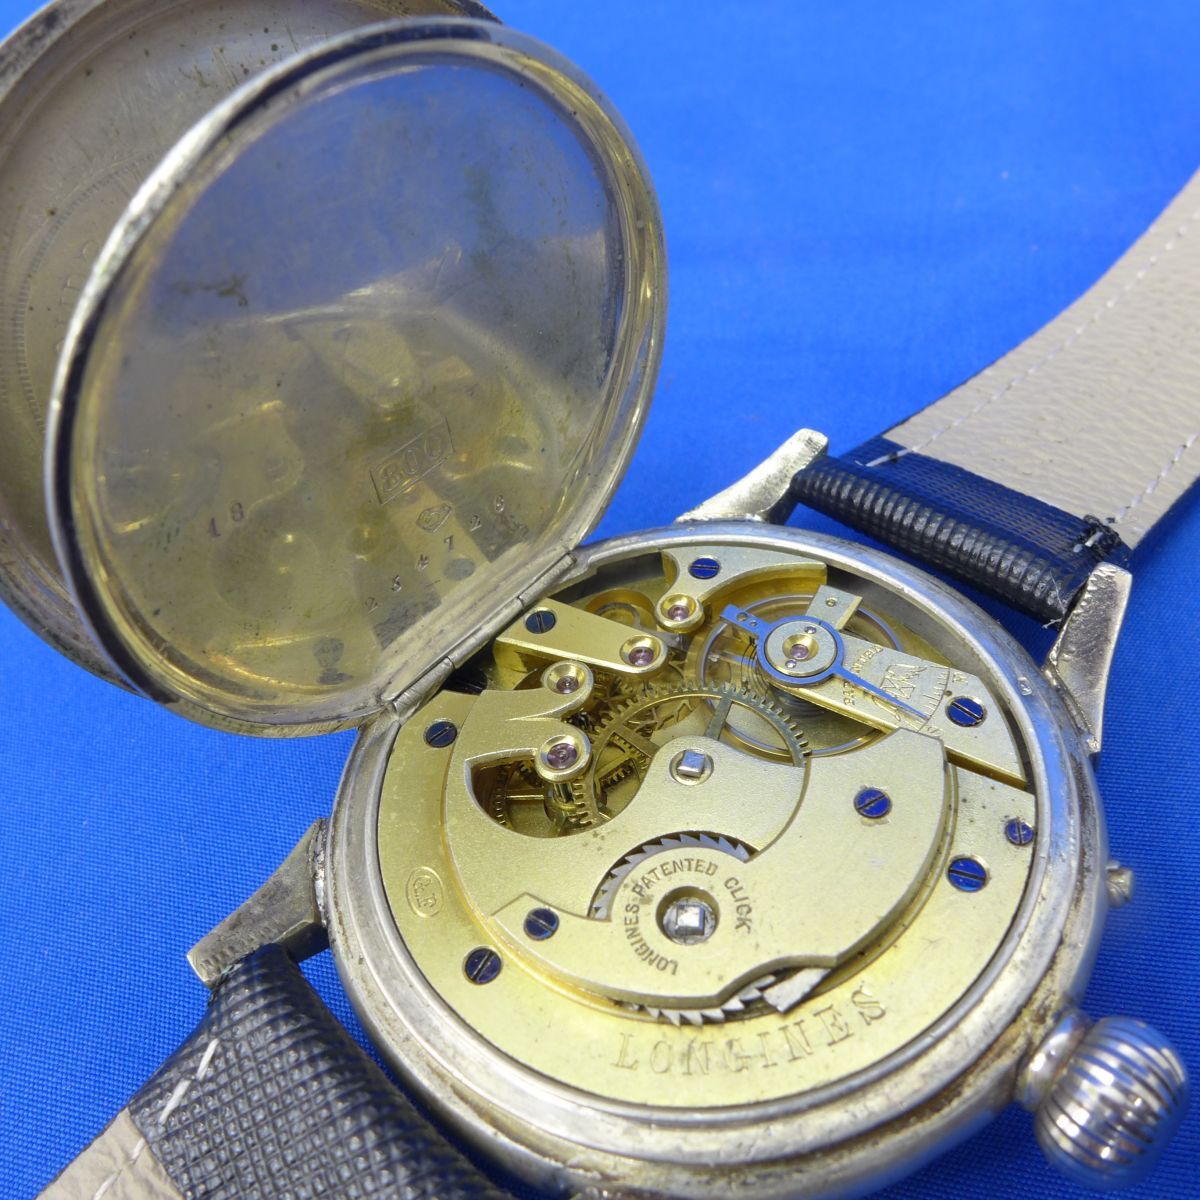 佐S7534●【動作確認済】 ロンジン メンズ 腕時計 手巻き 珍しい龍の絵柄  albrecht klotzsch paris1878 goldne Medaille 年代物の画像3